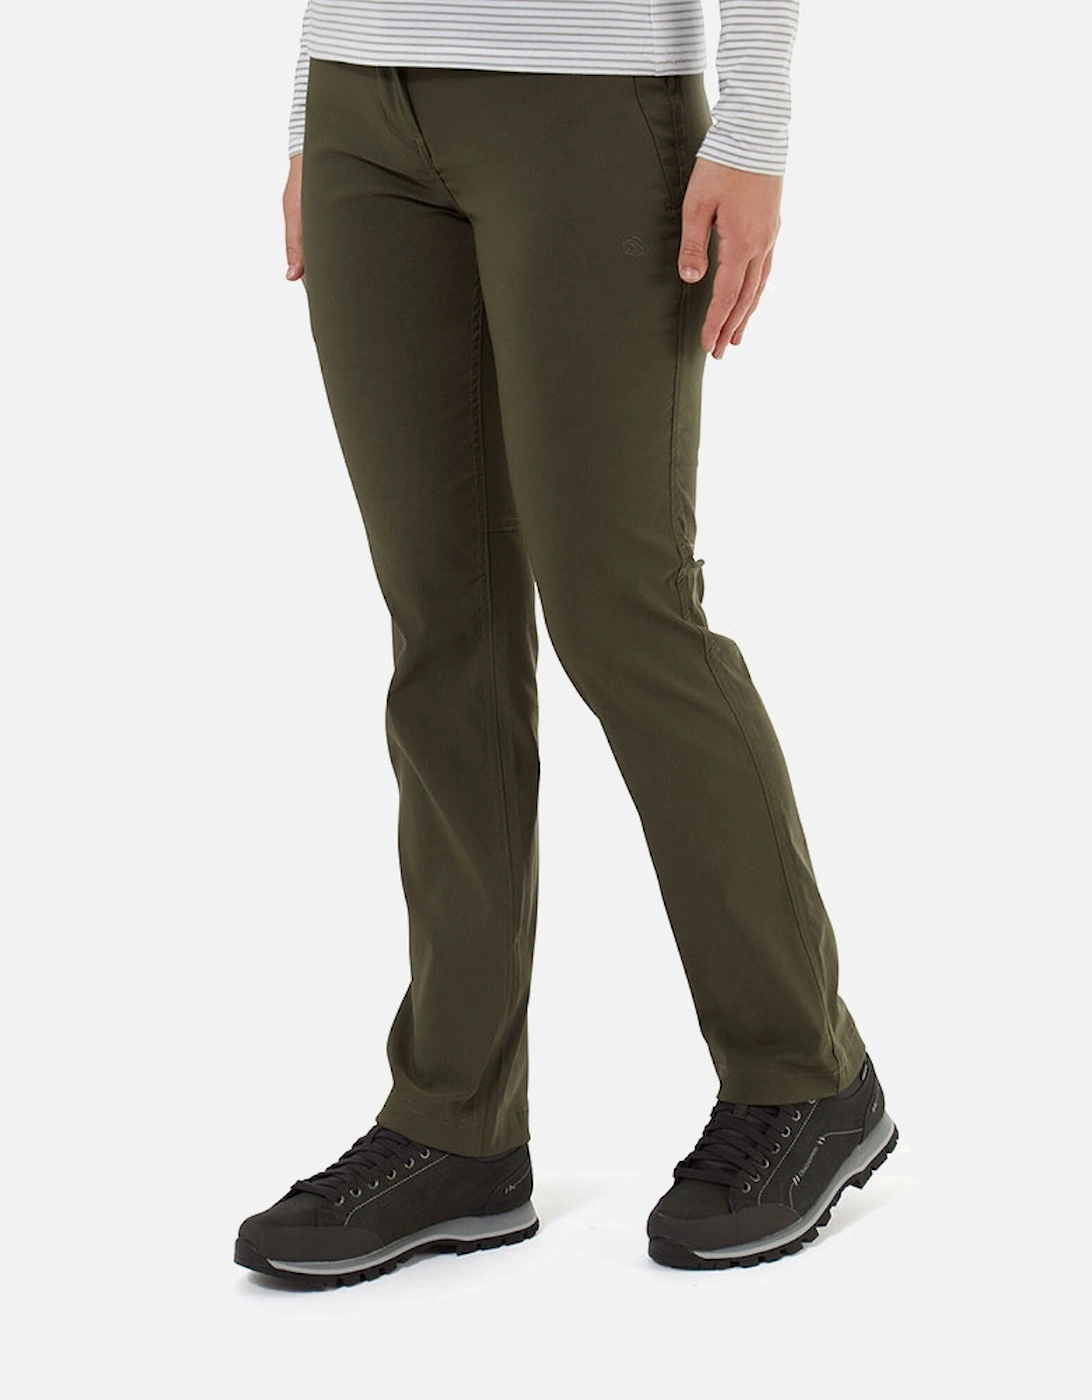 Womens Kiwi II Pro Smart Dry Walking Trousers, 8 of 7